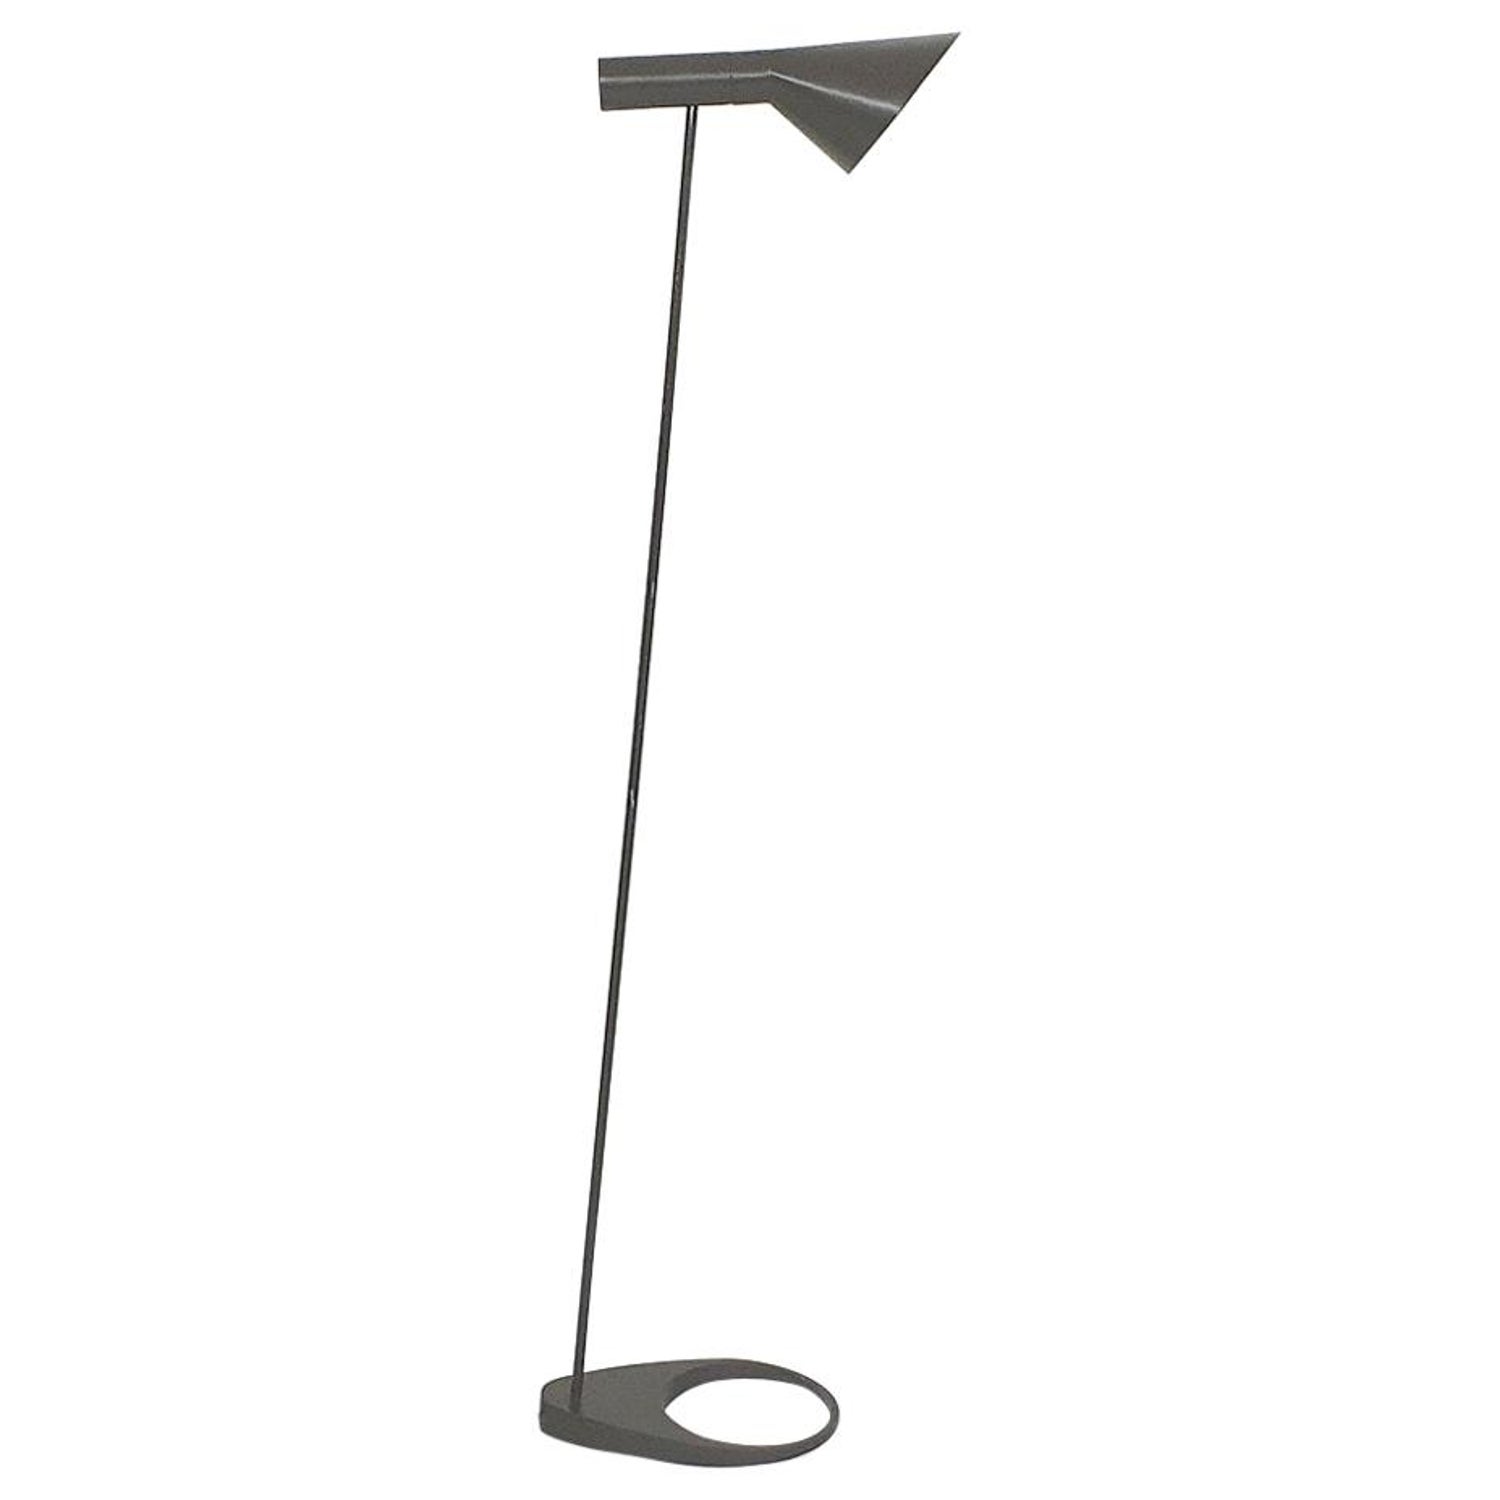 Arne Jacobsen Floor Lamp for Louis Poulsen